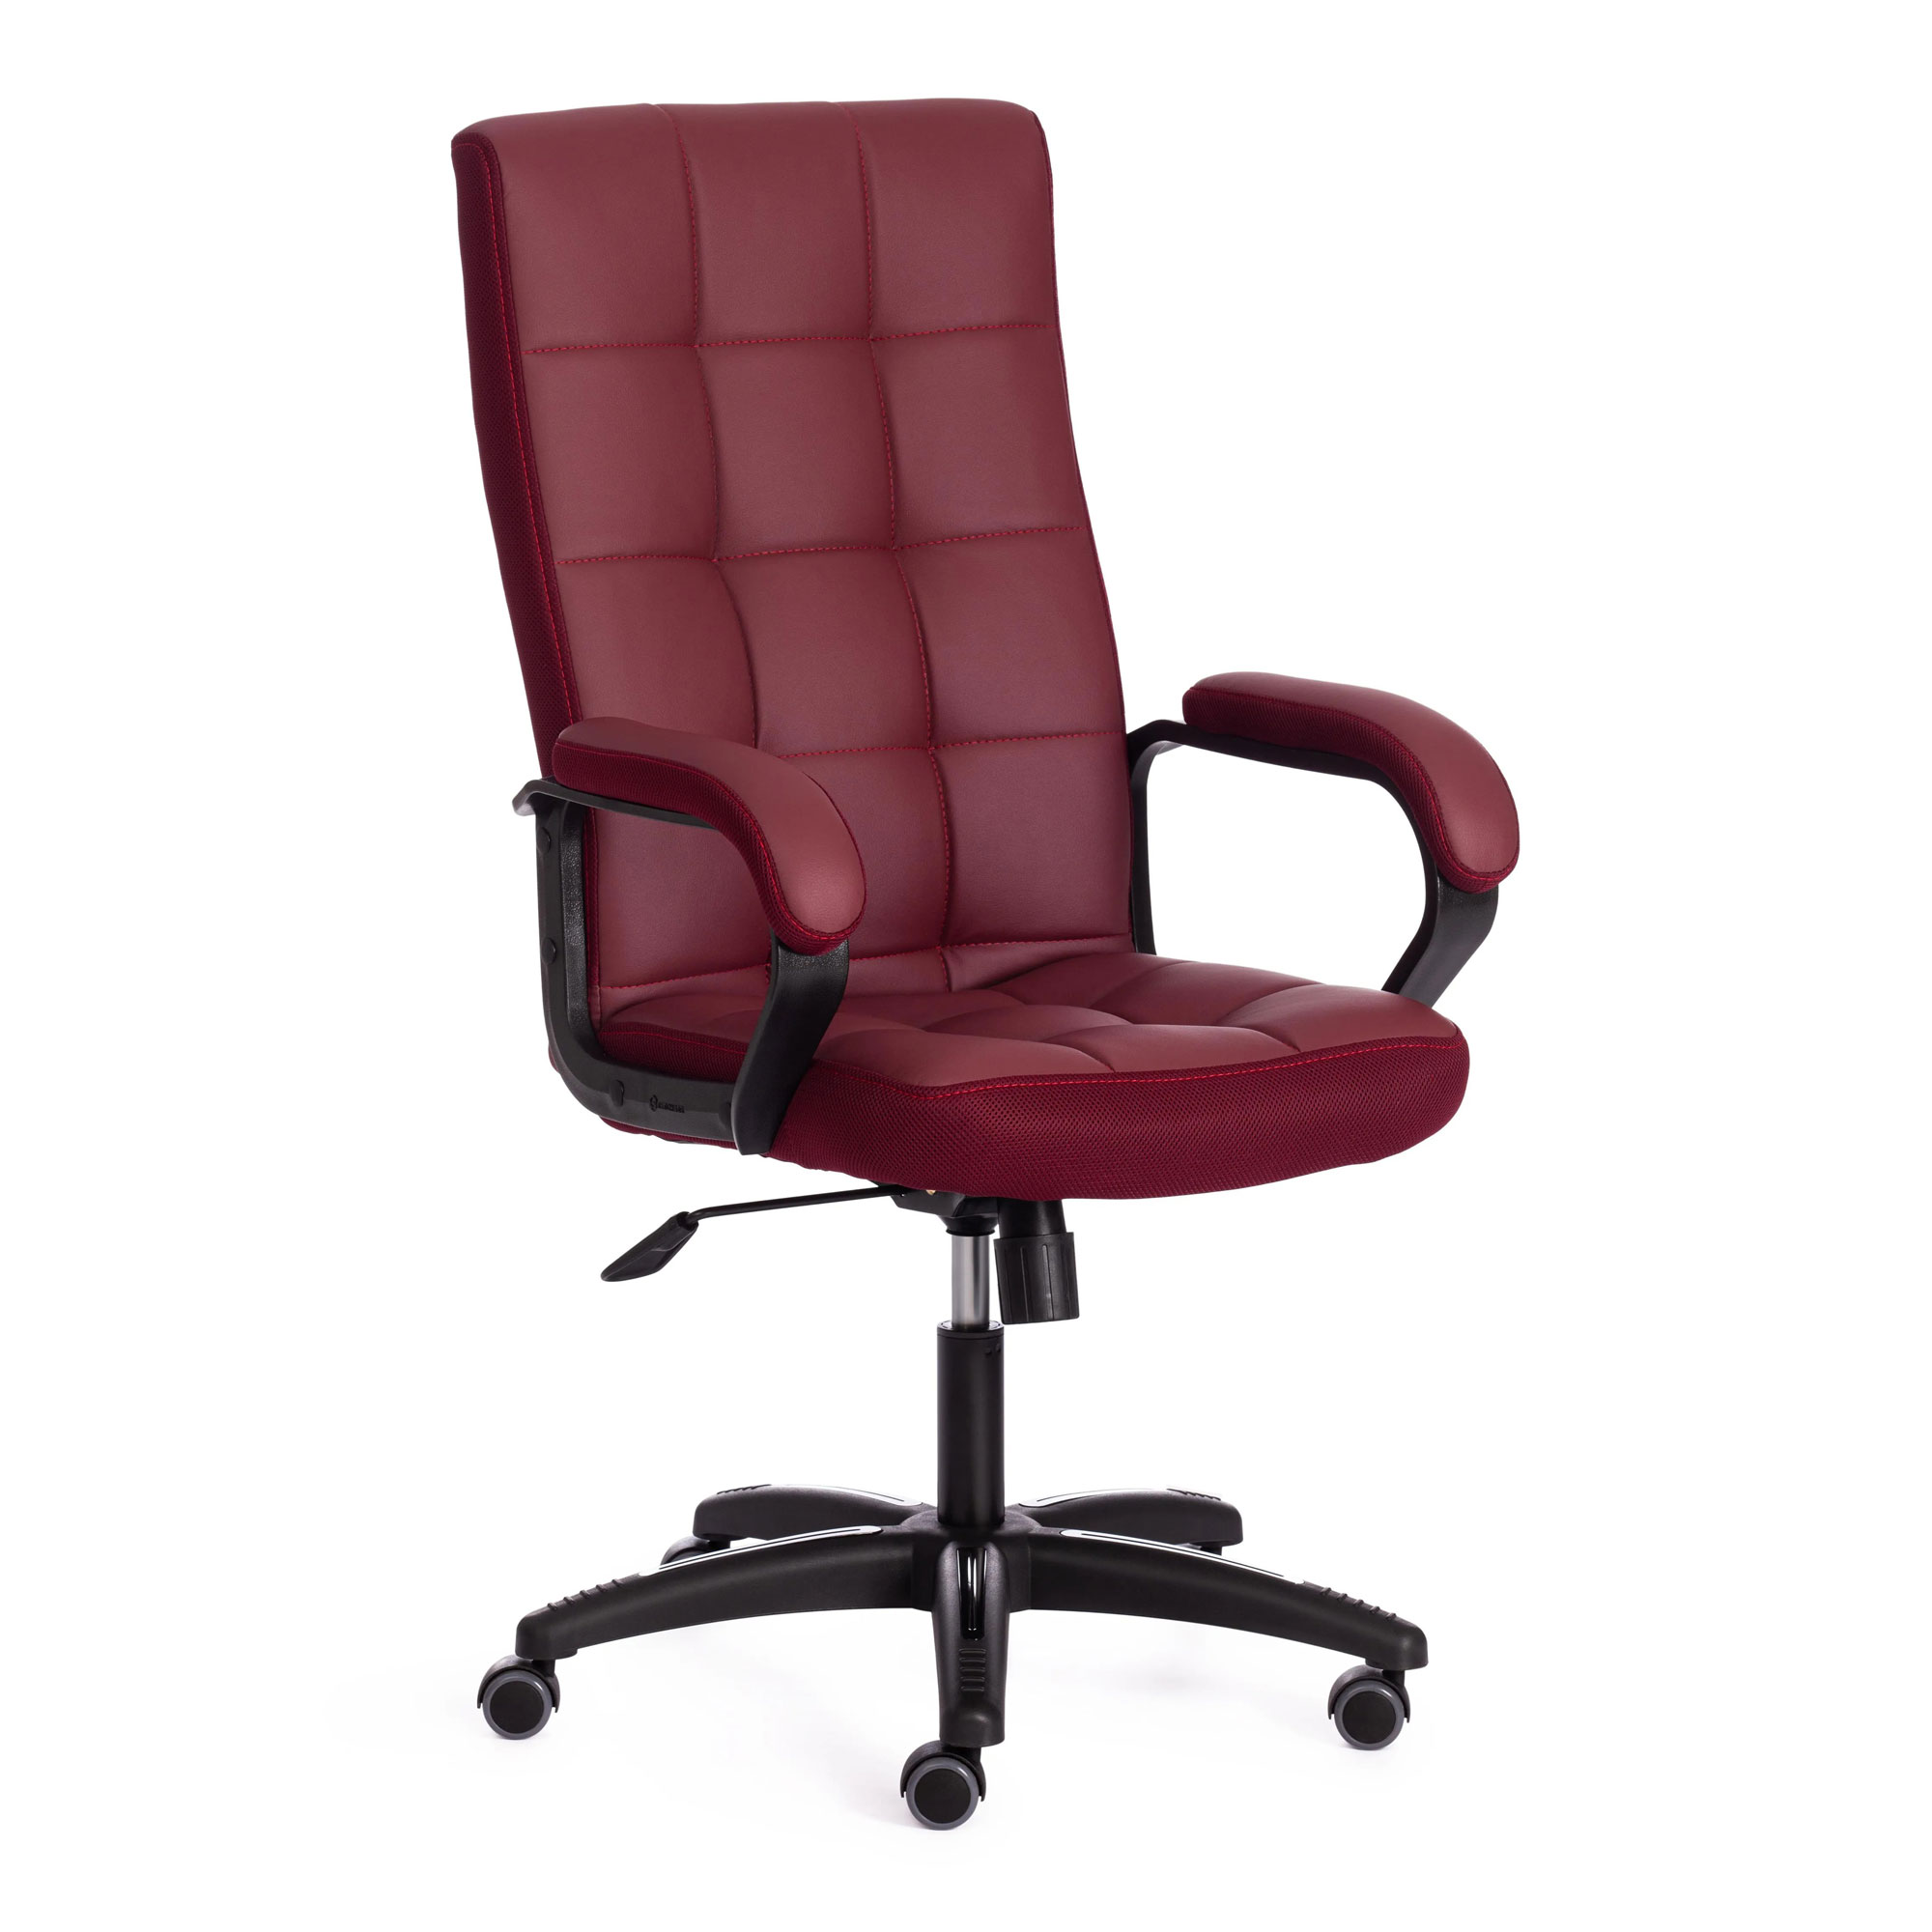 Кресло компьютерное TC искусственная кожа бордовое 61х47х126 см кресло компьютерное tc neo искусственная кожа бежевое 64х49х122 см